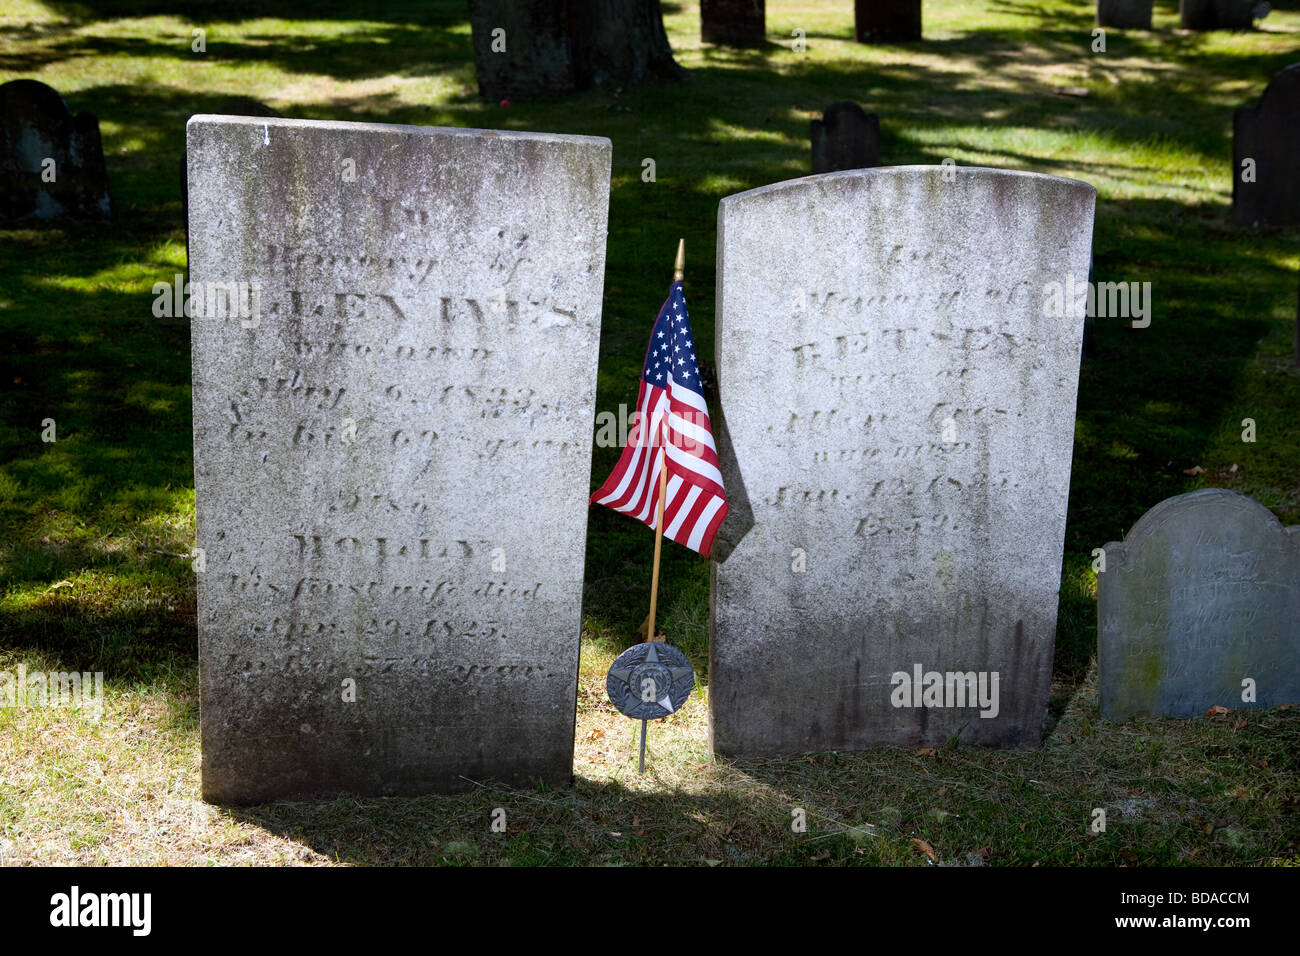 Alte Grabsteine. Grabsteine aus dem späten 1700 und frühen 1800 in North Haven CT USA Stockfoto